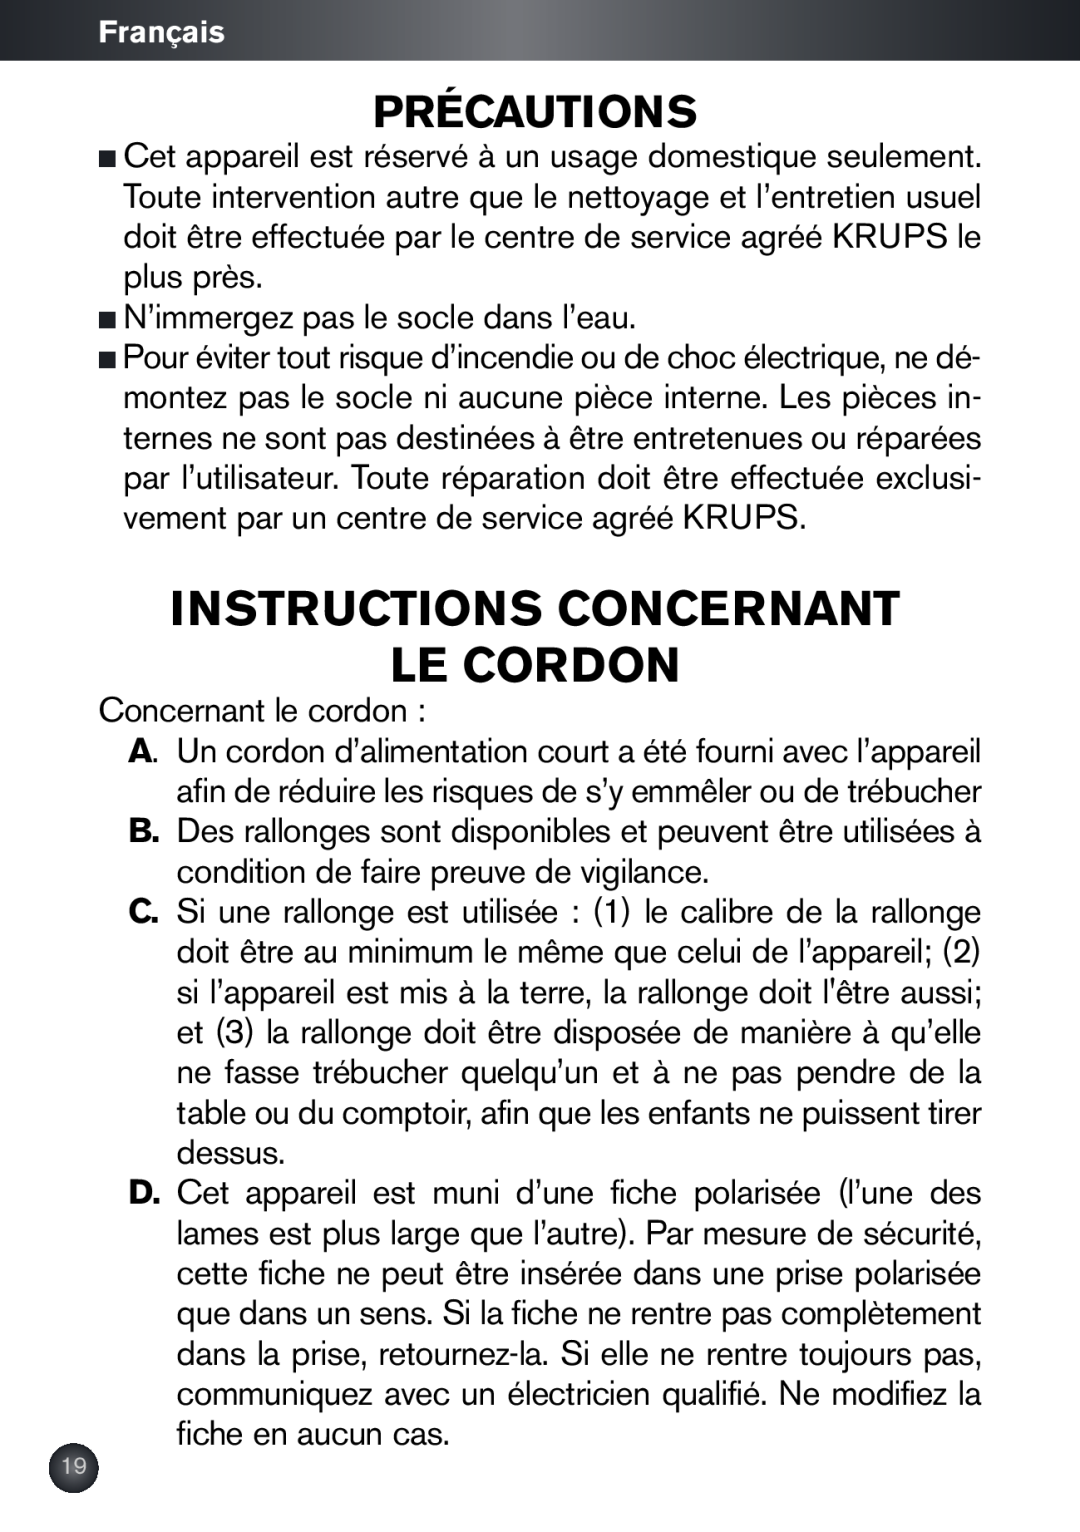 Krups KB790 manual Instructions Concernant Le Cordon, Précautions 